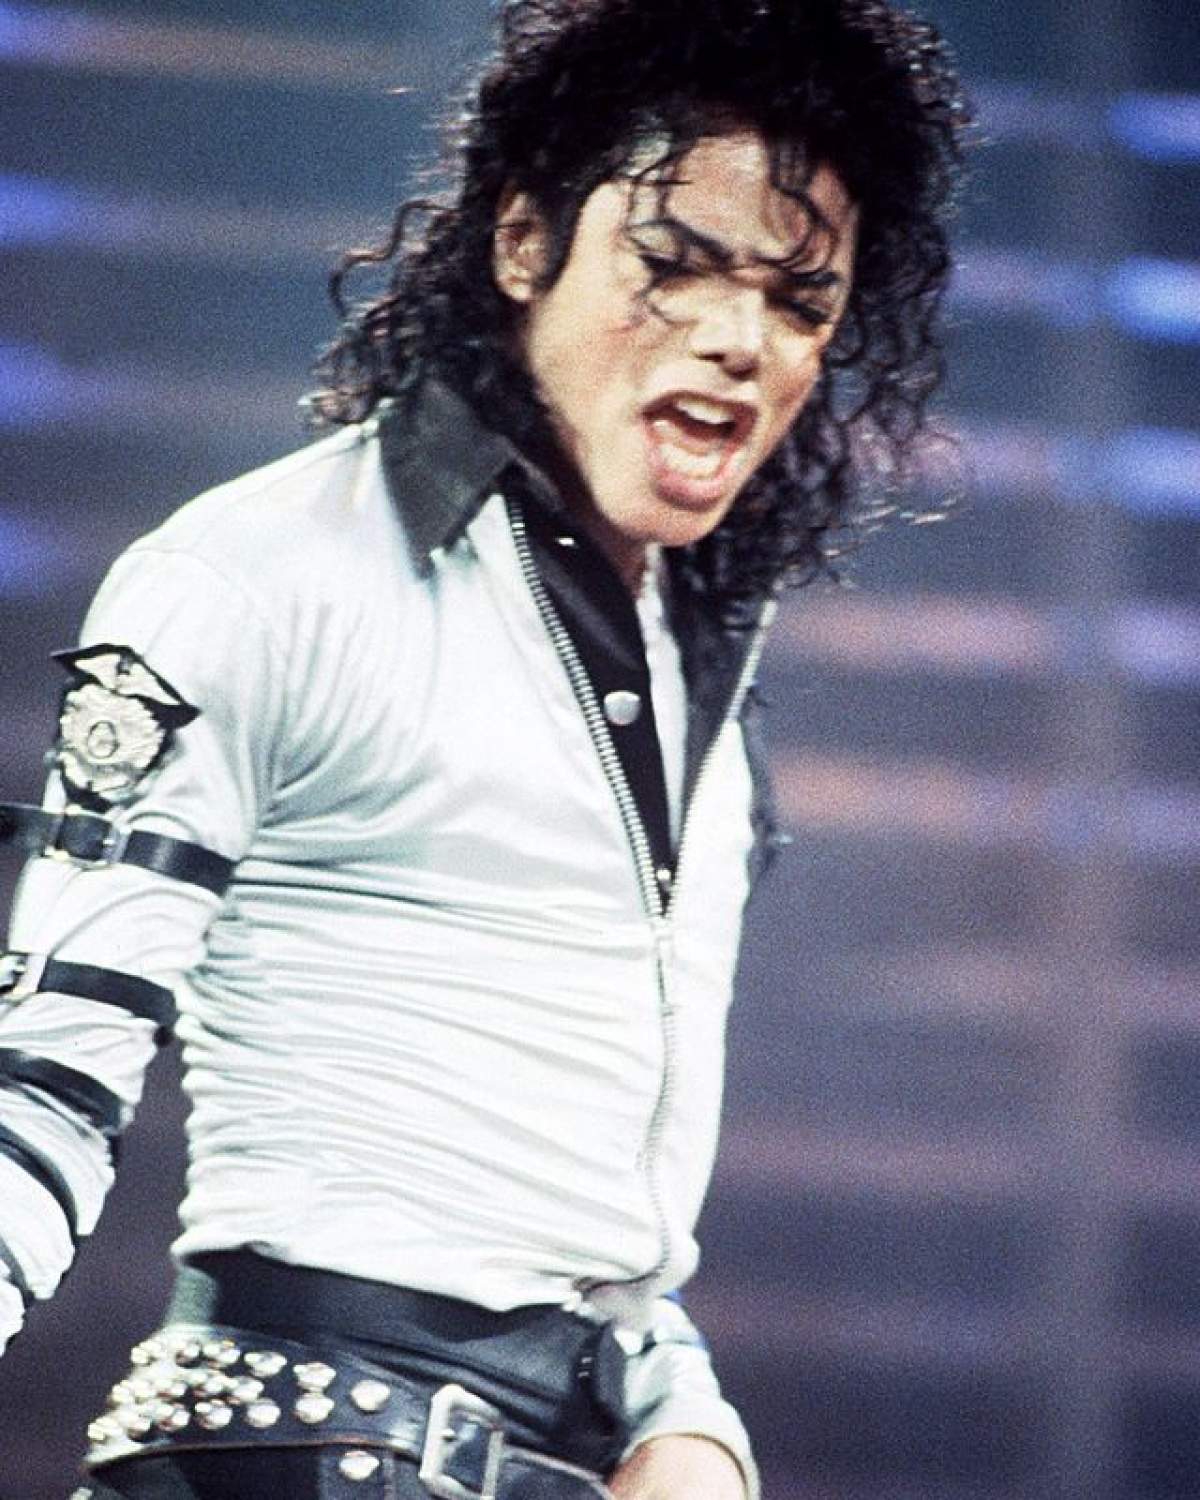 Michael Jackson, rege şi după moarte! Topul vedetelor care fac bani deşi nu mai trăiesc